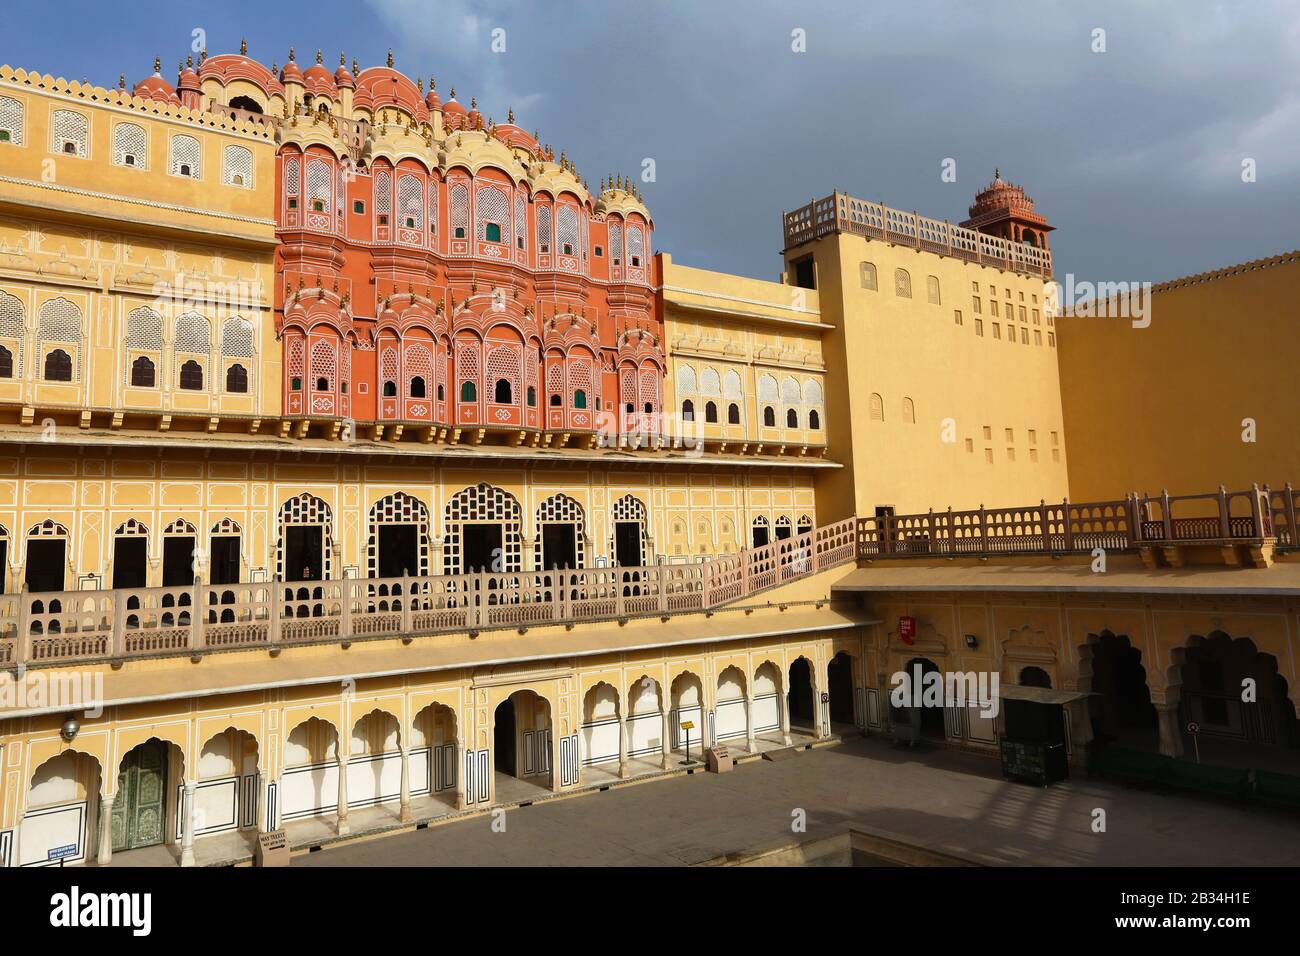 Interior of Palace of the Winds, Hawa Mahal, Jaipur, Rajasthan, India Stock Photo